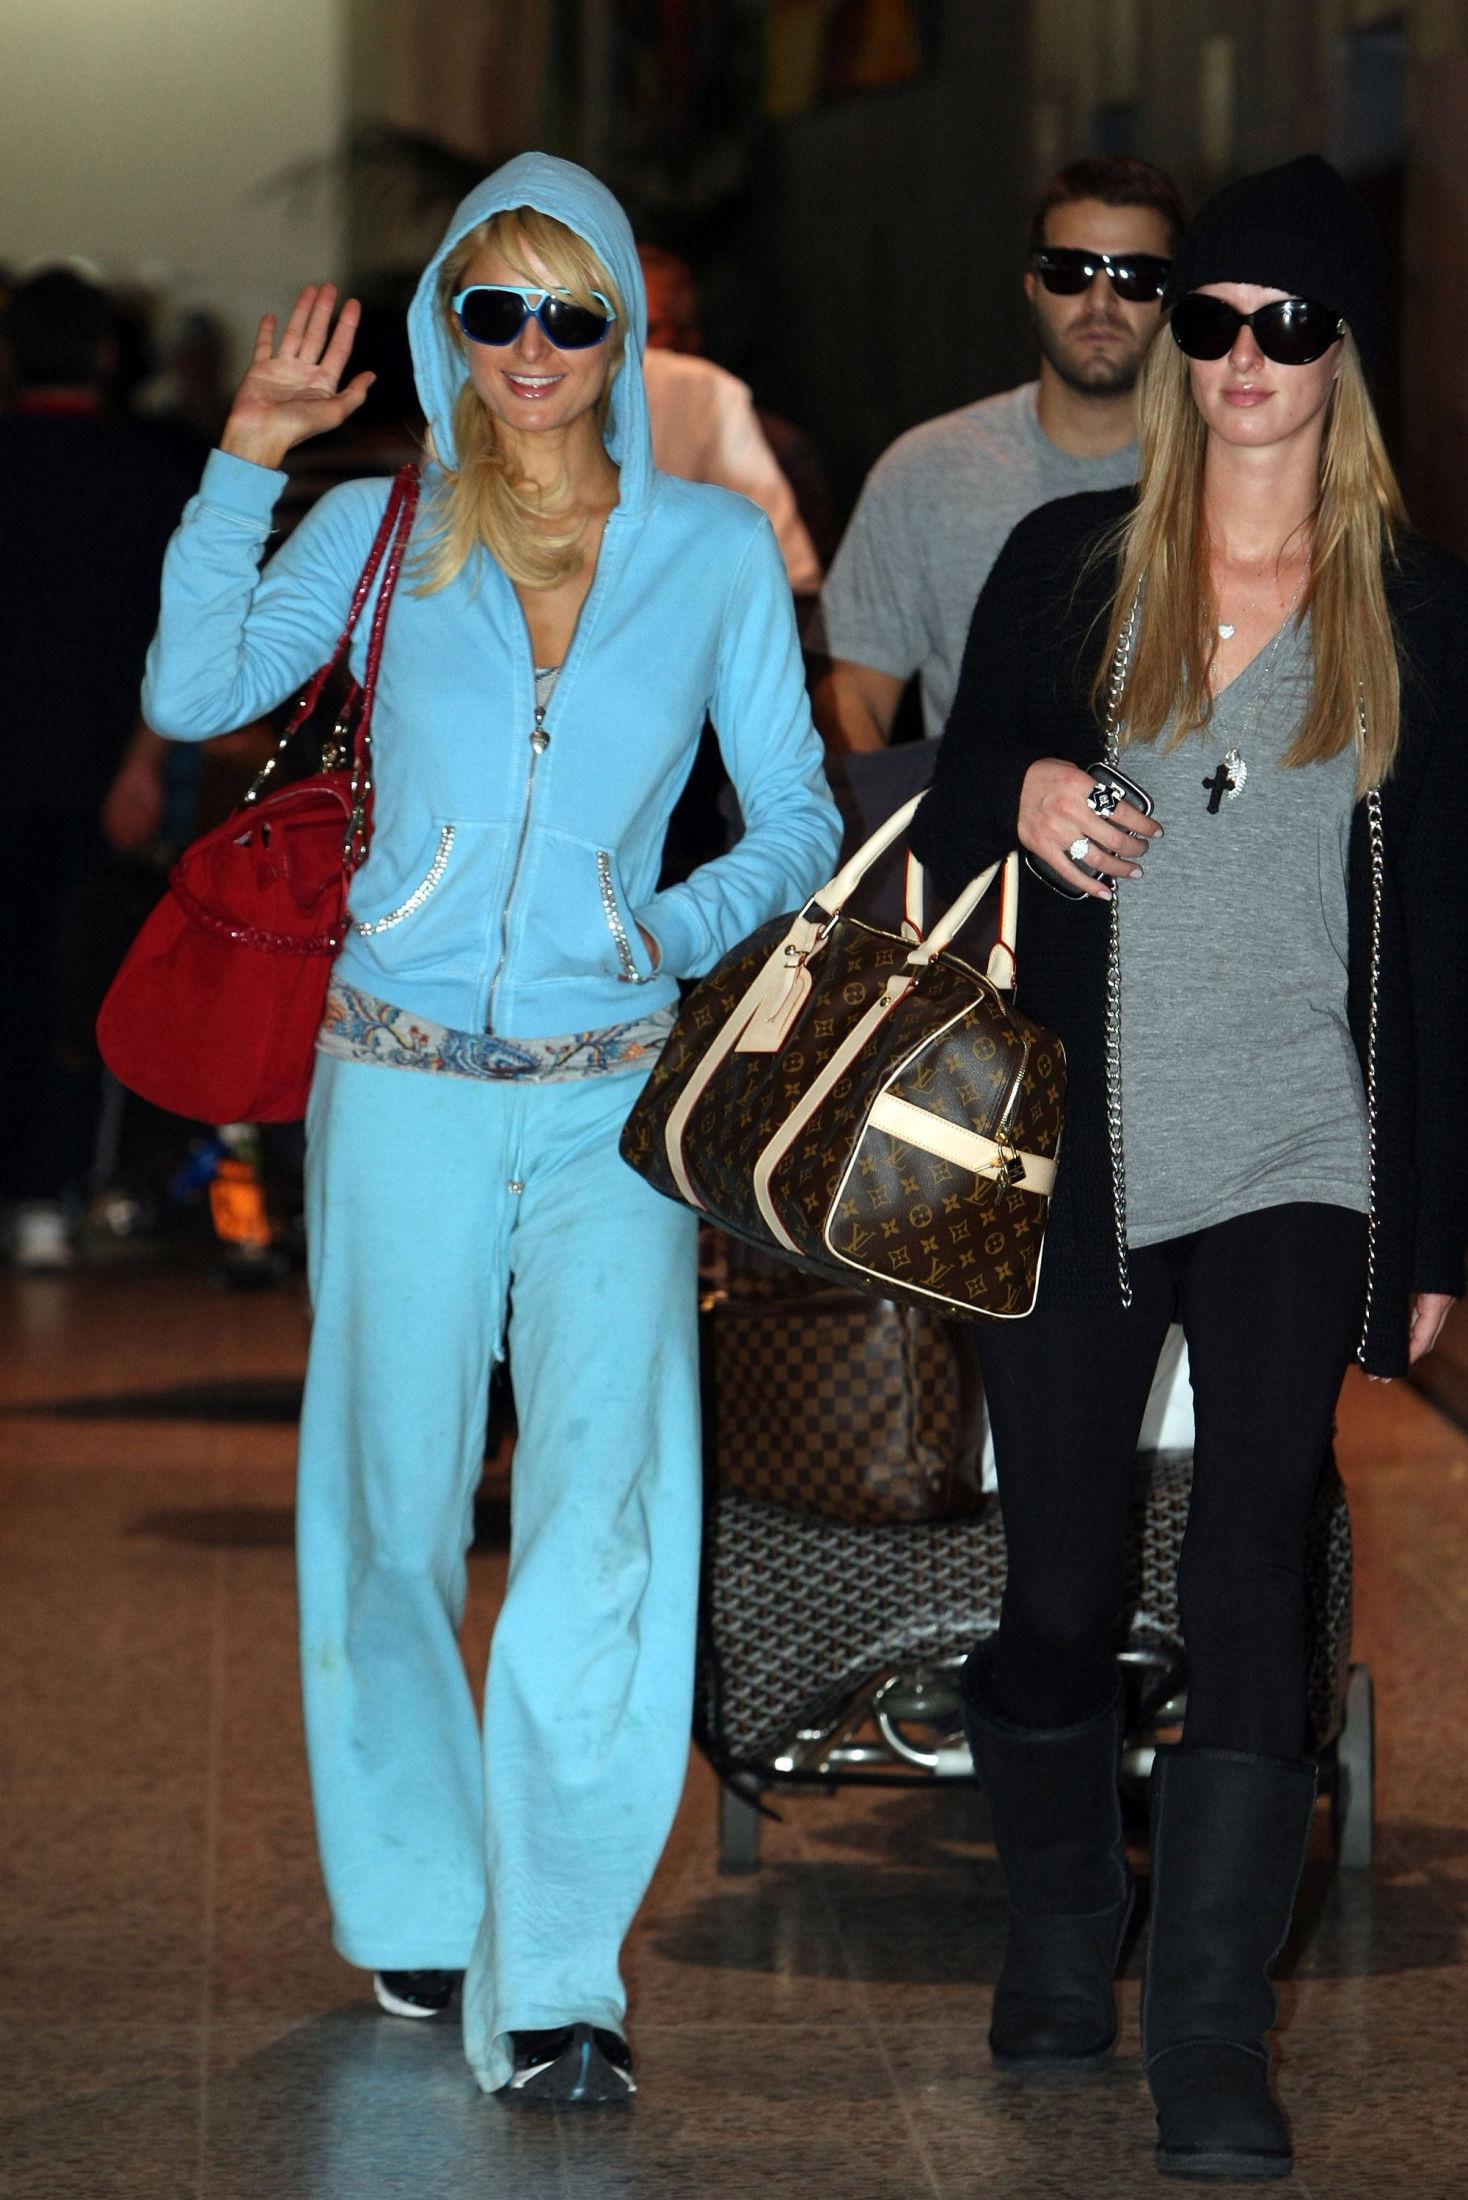 SØSTRE: Paris og Nicky Hilton har blitt avbildet med UGGs ved flere anledninger. Her på flyplassen hvor Paris er iført turkis kosedress og søsteren Nicky, svarte UGGs. Foto: Getty Images